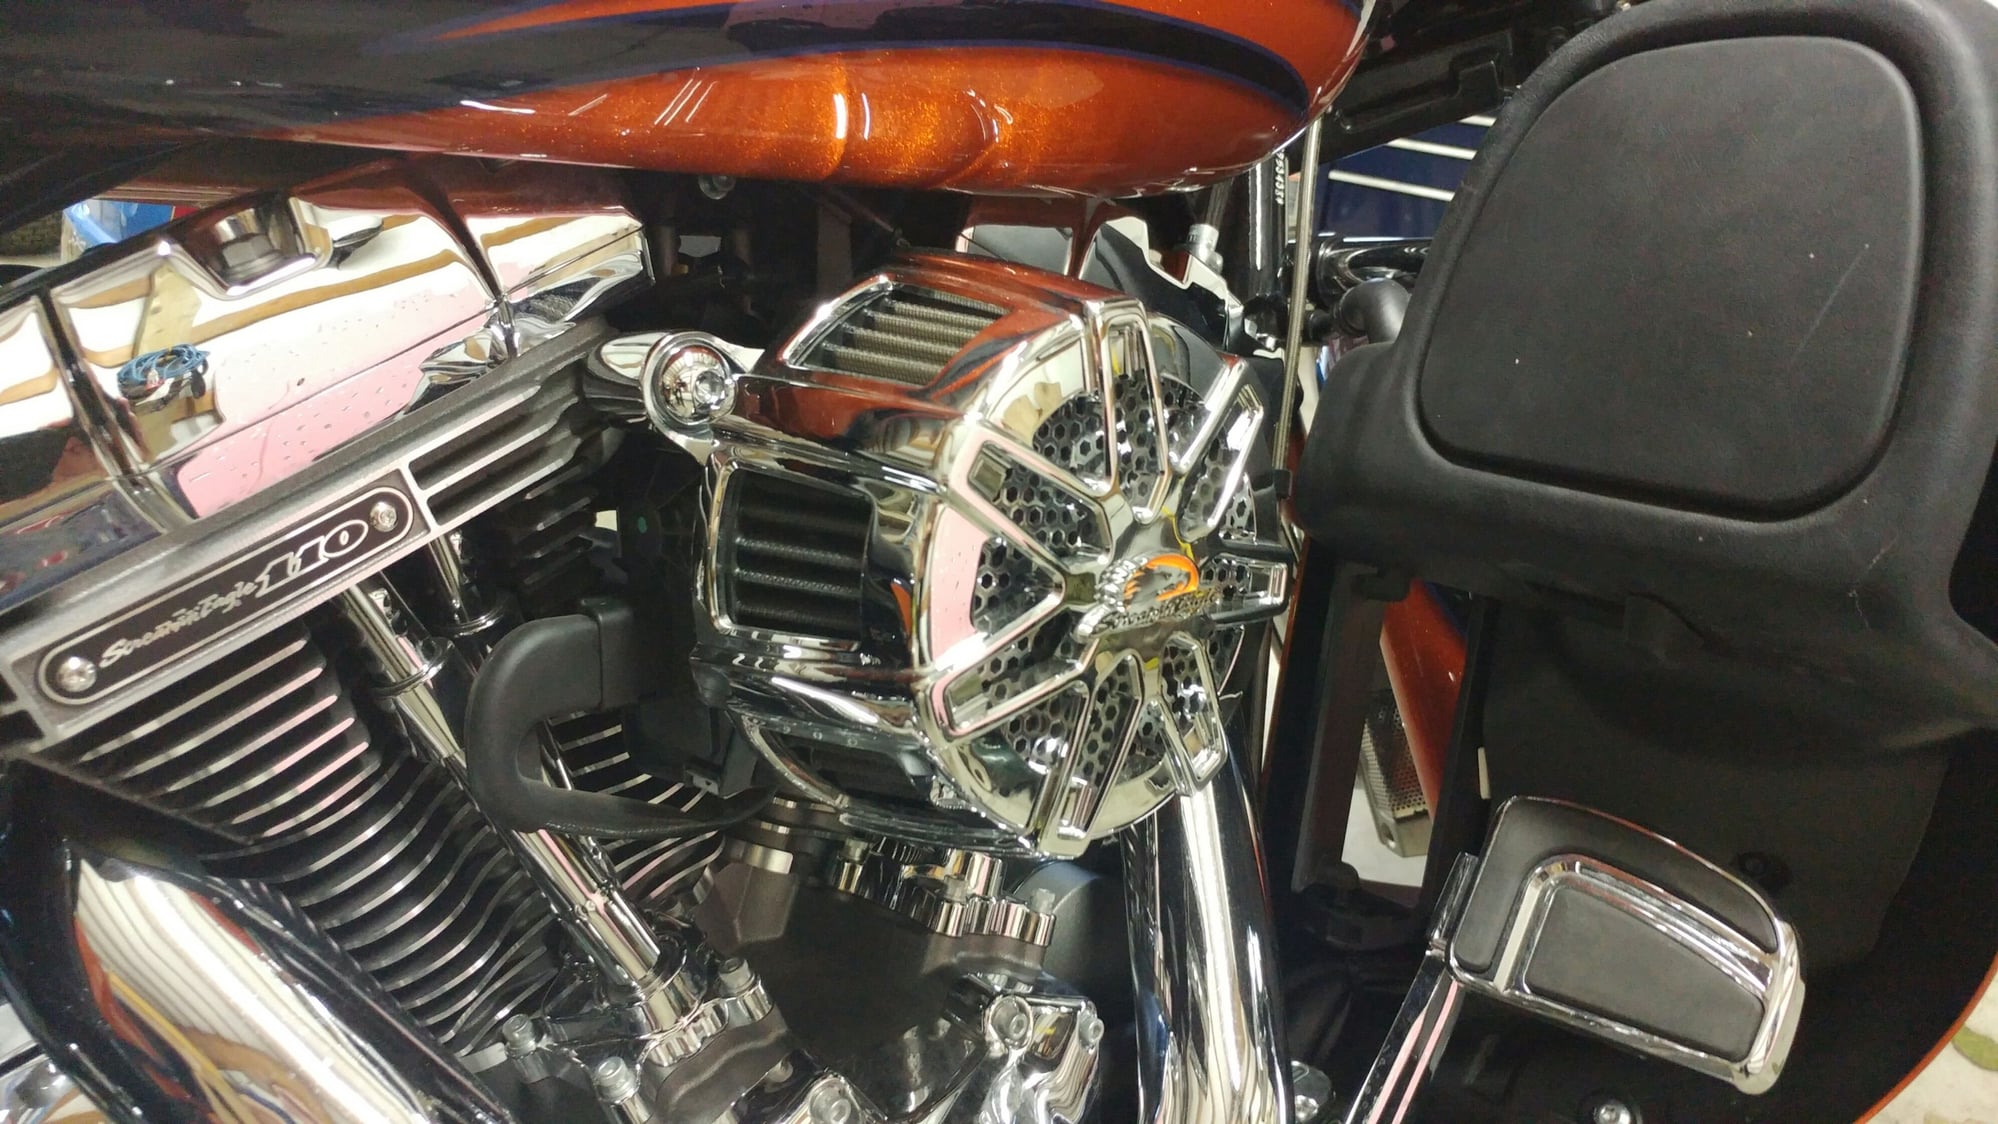 Fs Hd Screamin Eagle Chisel Extreme Billet Air Cleaner Kit Harley Davidson Forums